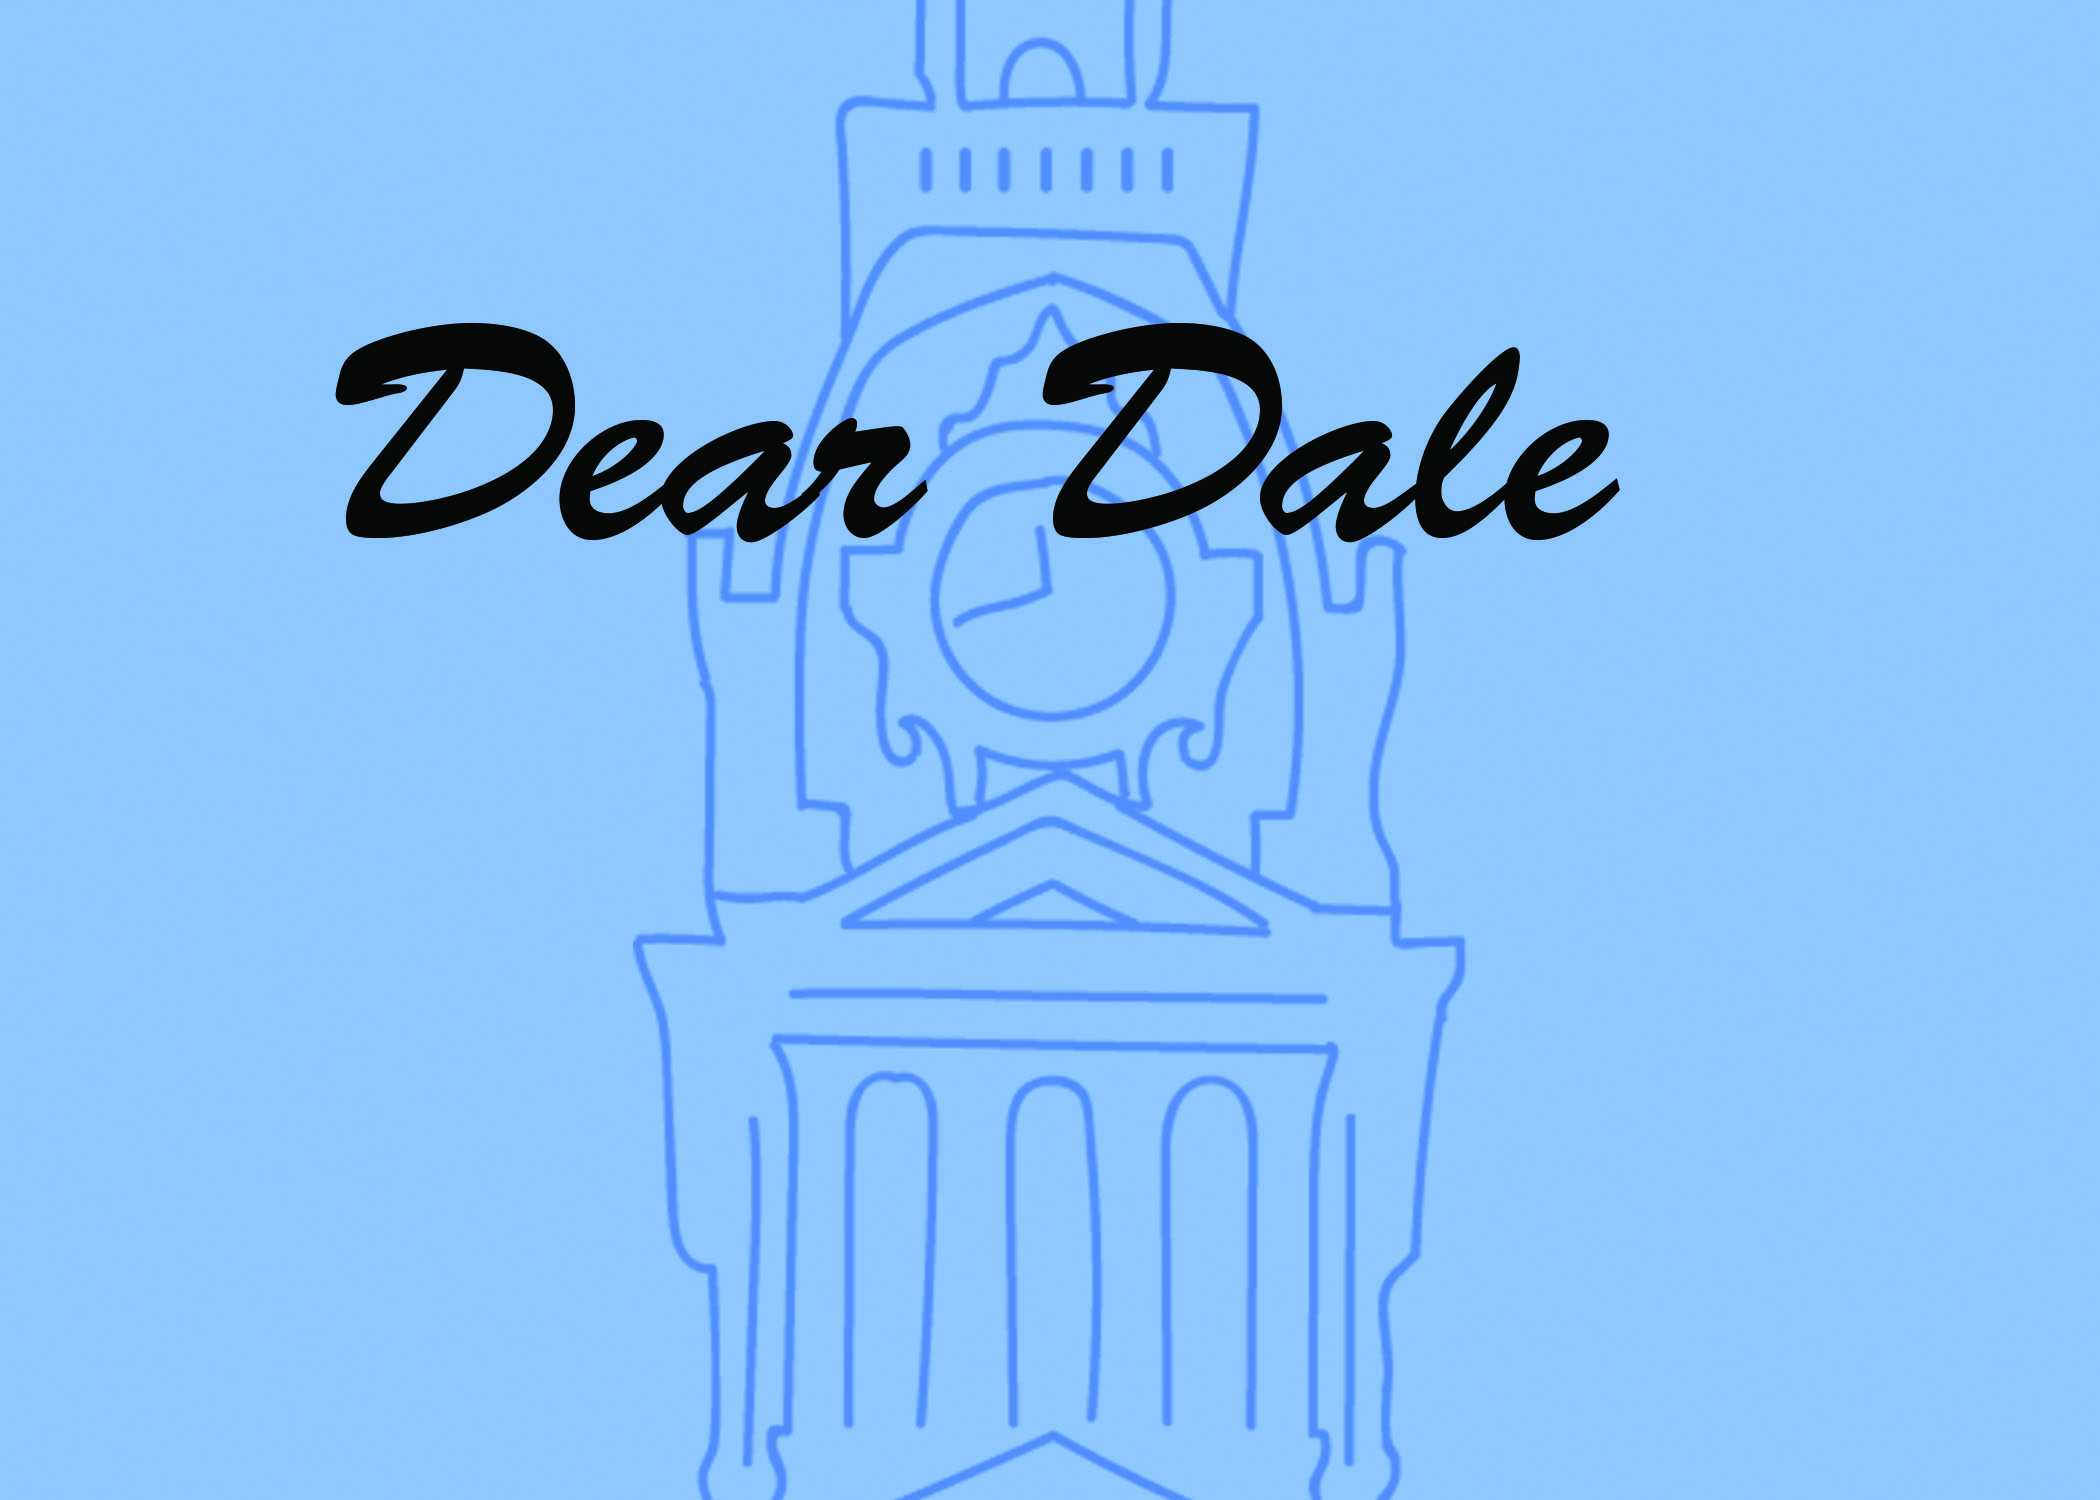 Dear Dale,